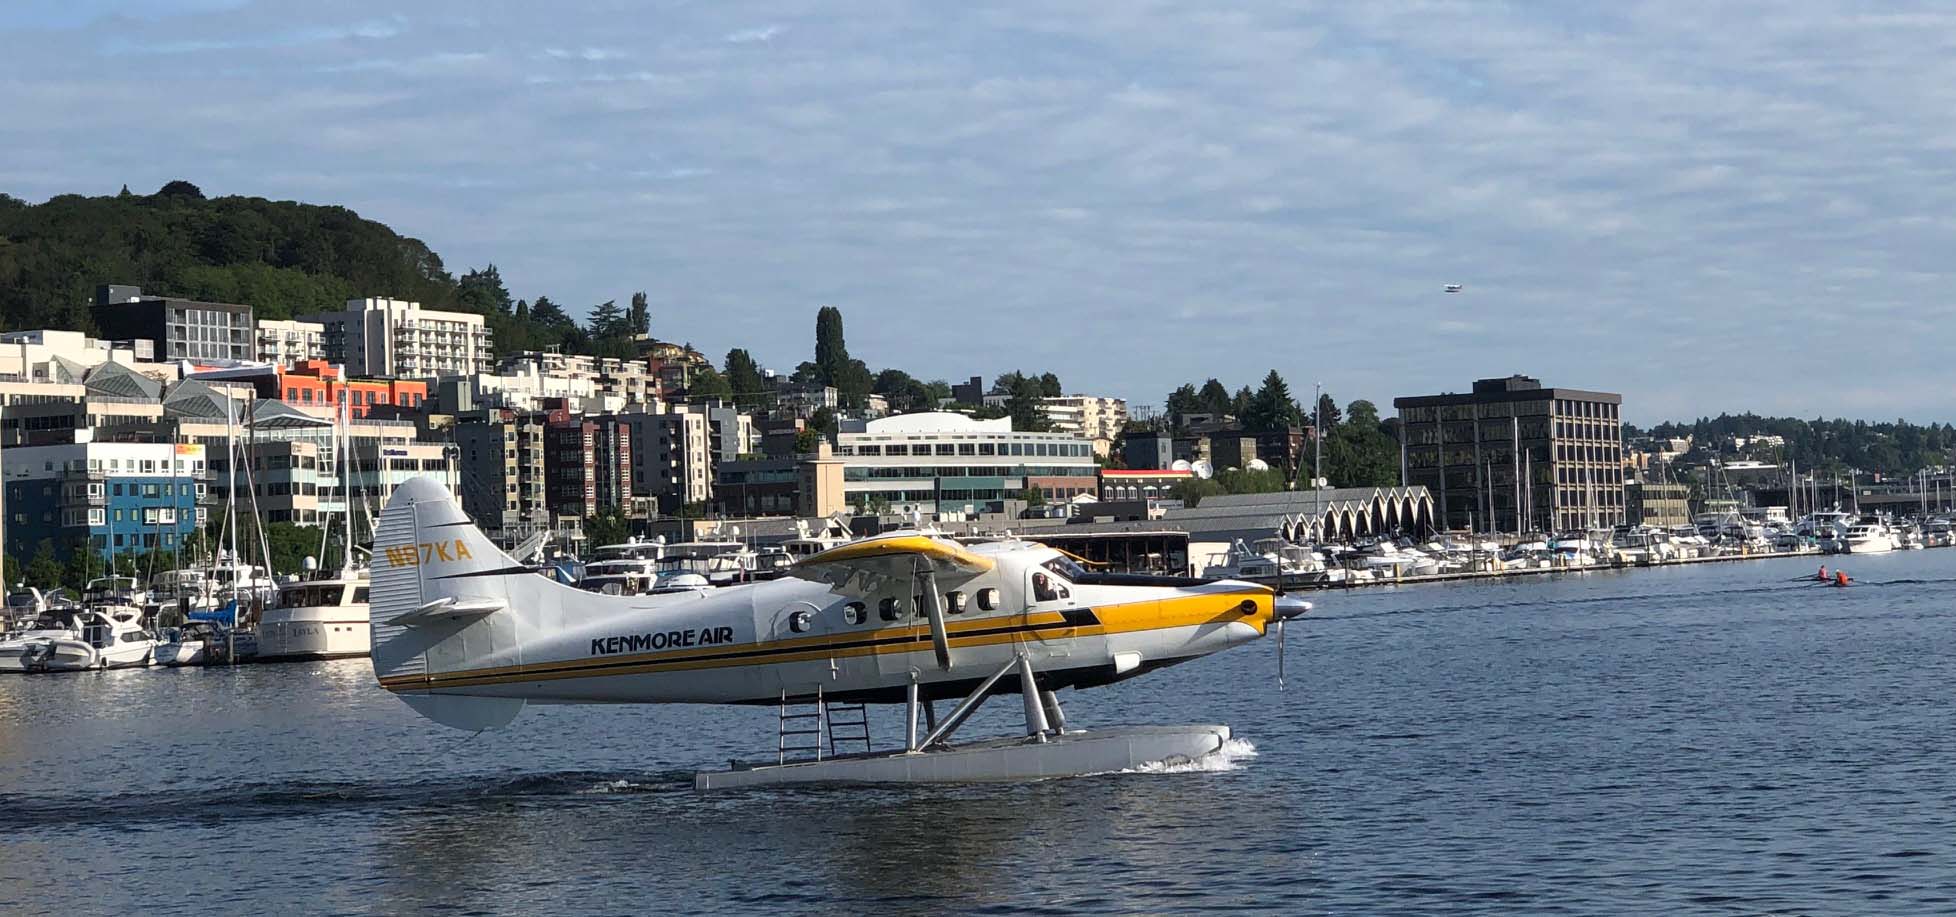 Floatplane cruising on a lake readying to take flight.